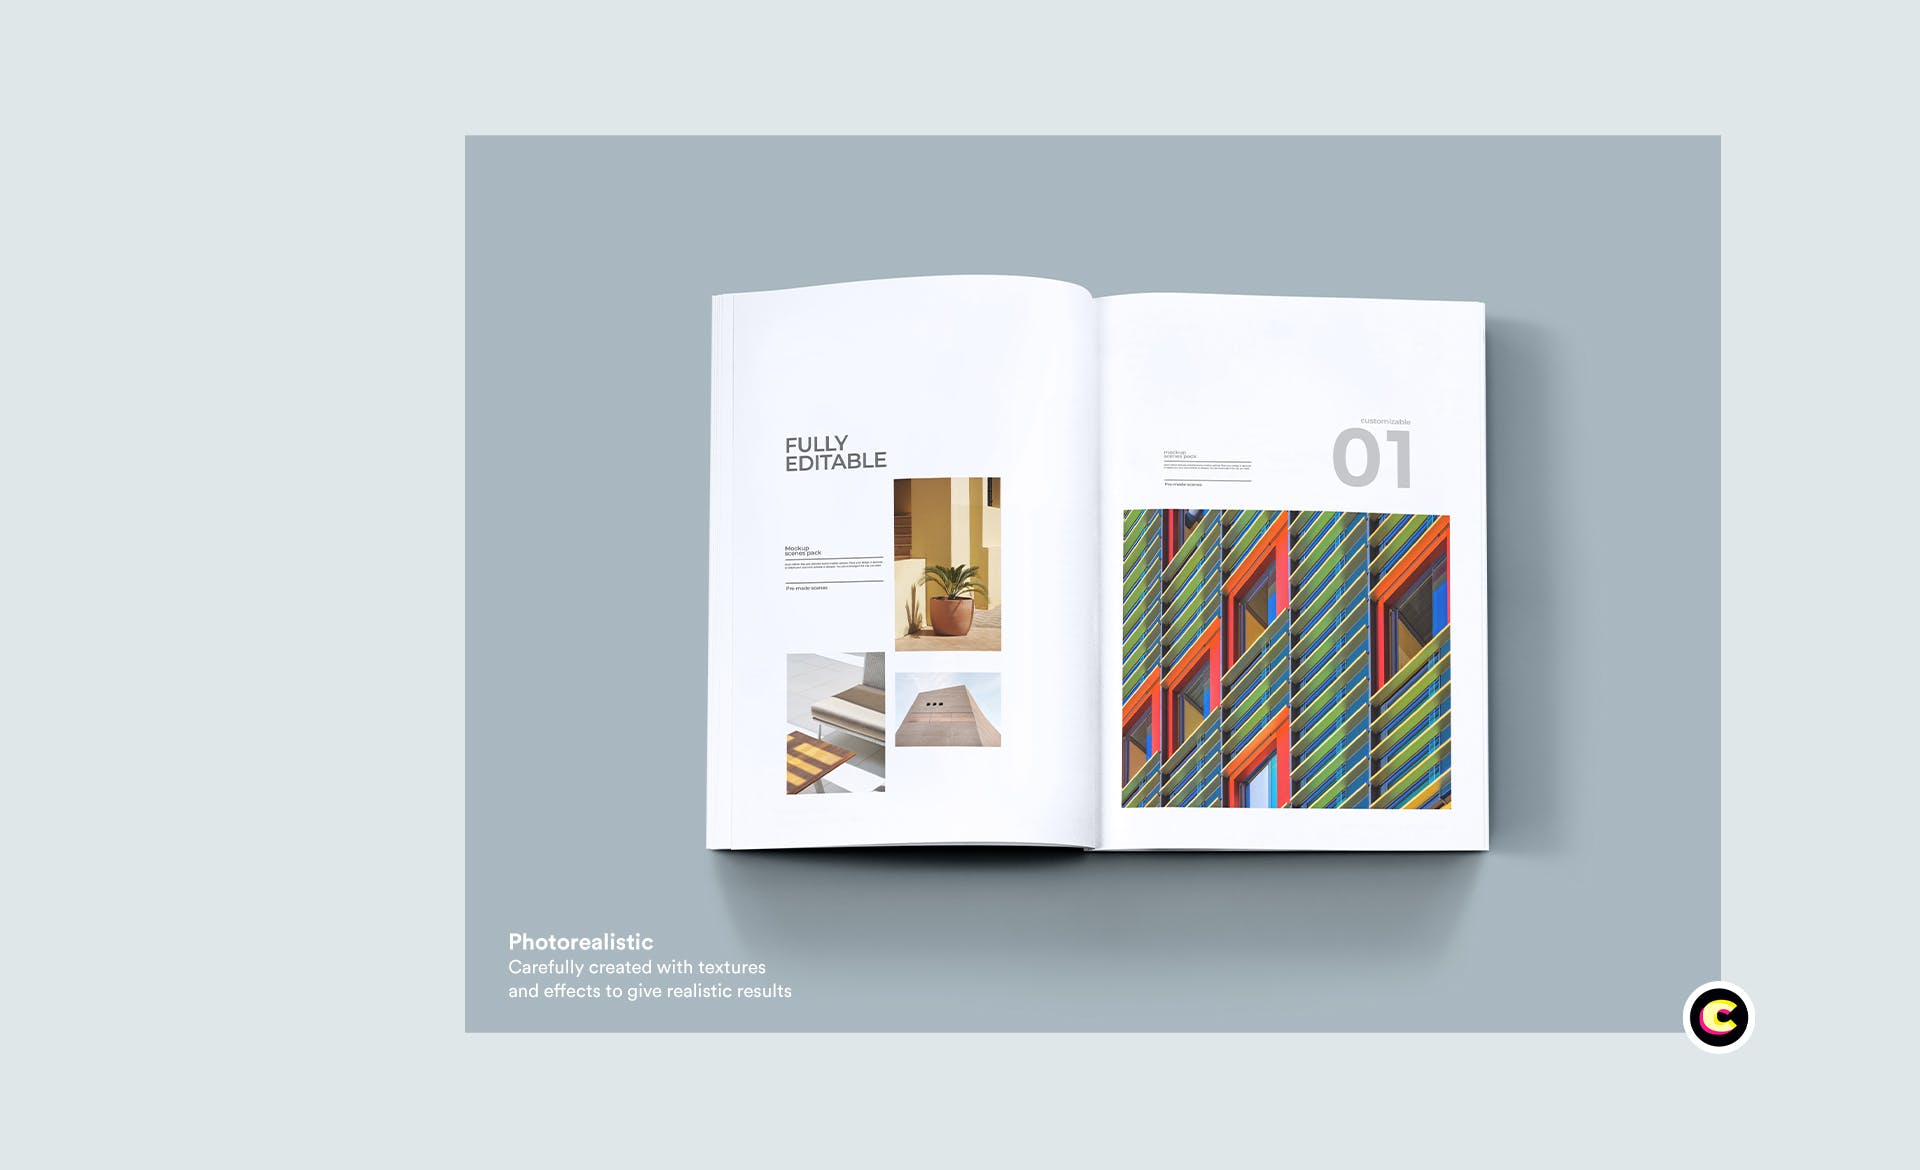 企业画册封面&版式设计效果图样机第一素材精选 Brochure Mock Up插图(7)